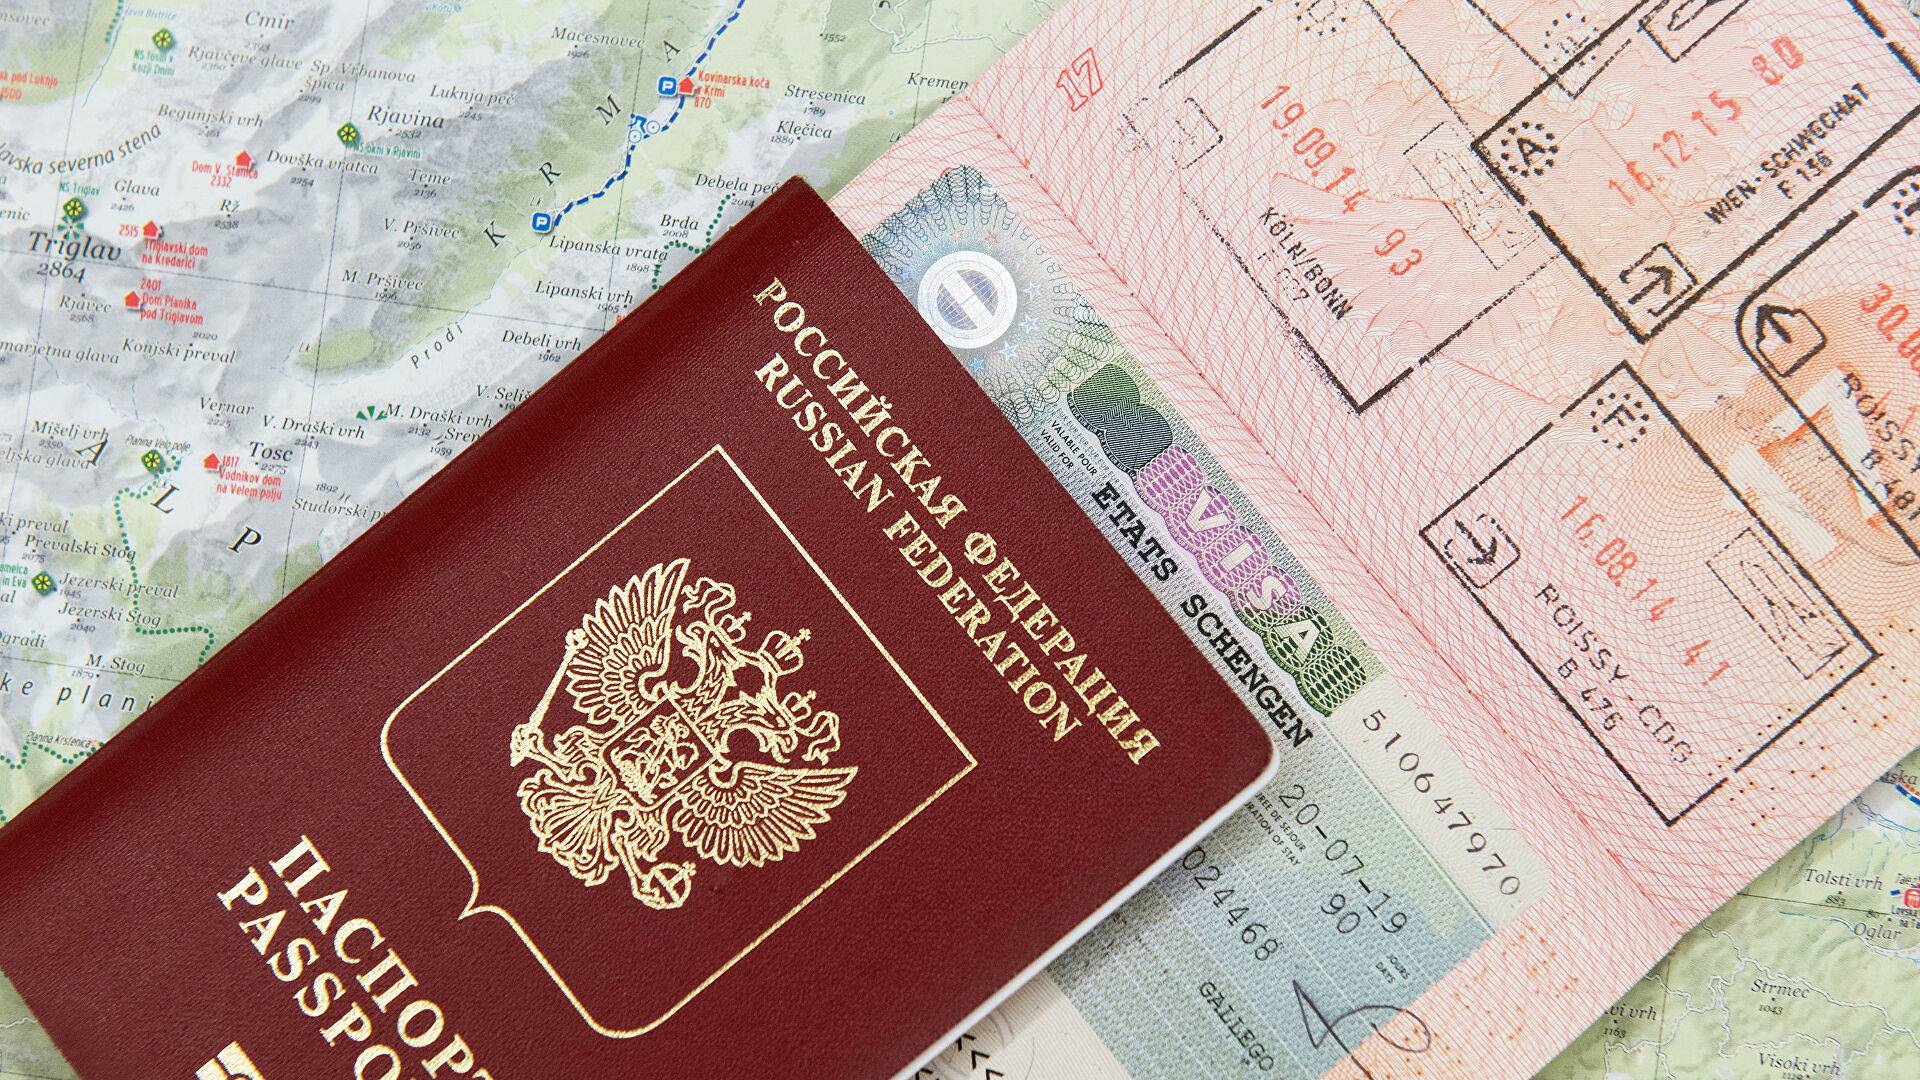 Как получить гражданство германии для граждан россии, украины, стран евросоюза: 7 способов законного получения гражданства, условия, стоимость, порядок оформления